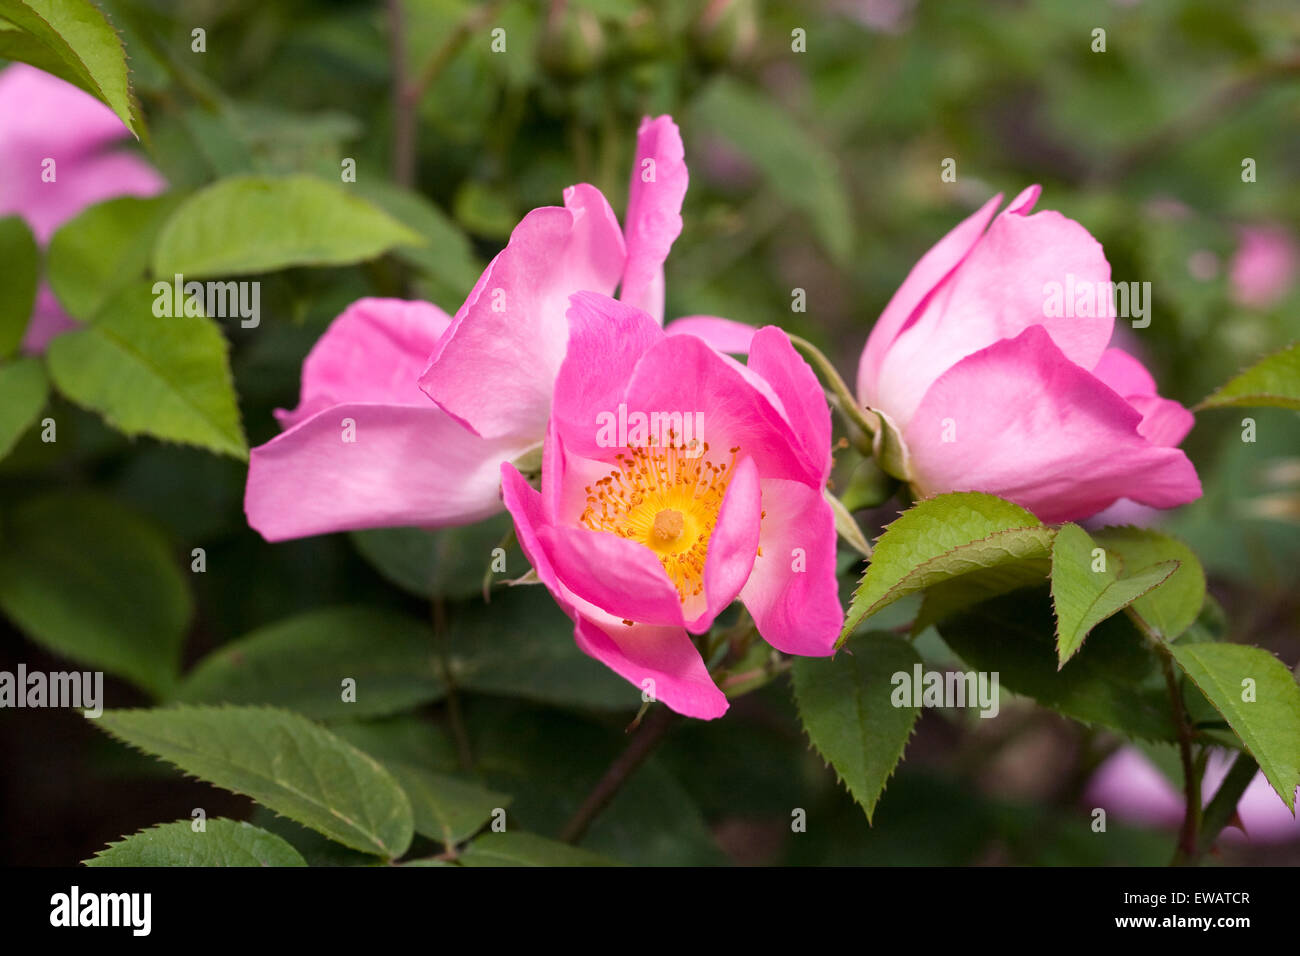 Rosa 'Complicata' flowers in an English garden. Stock Photo